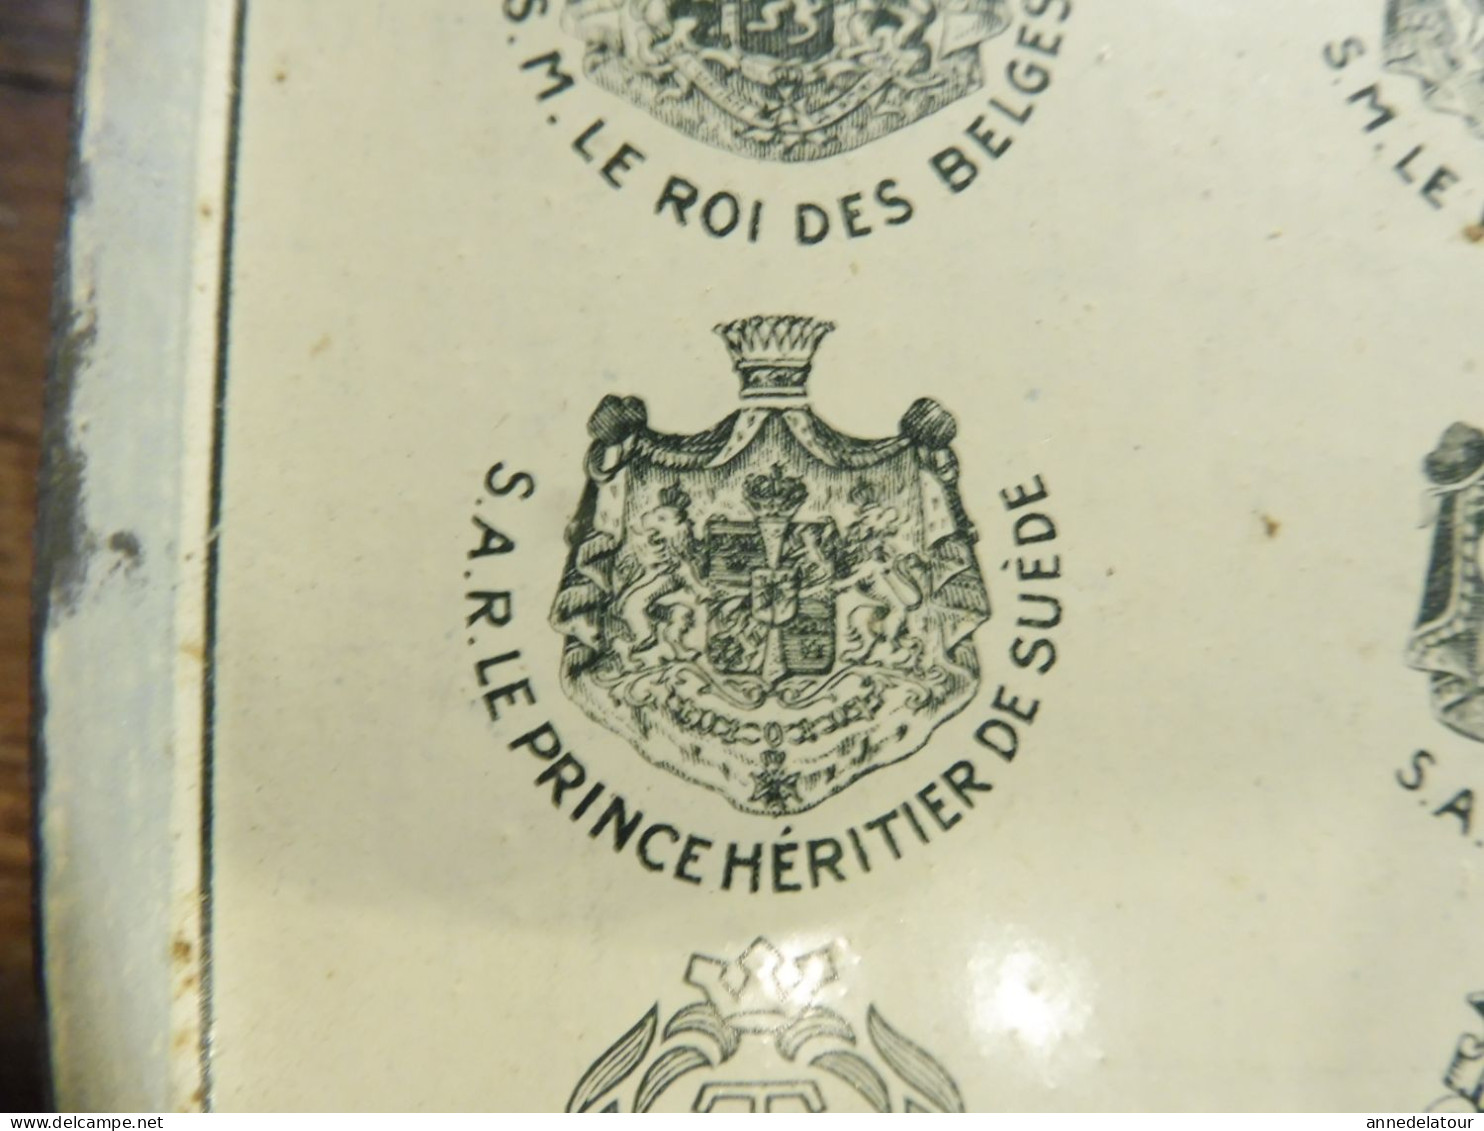 BOITE A CIGARETTES  en métal  " Le Khédive "  avec nombreux blasons des pays clients   dimensions = 15 x 7 x 5cm